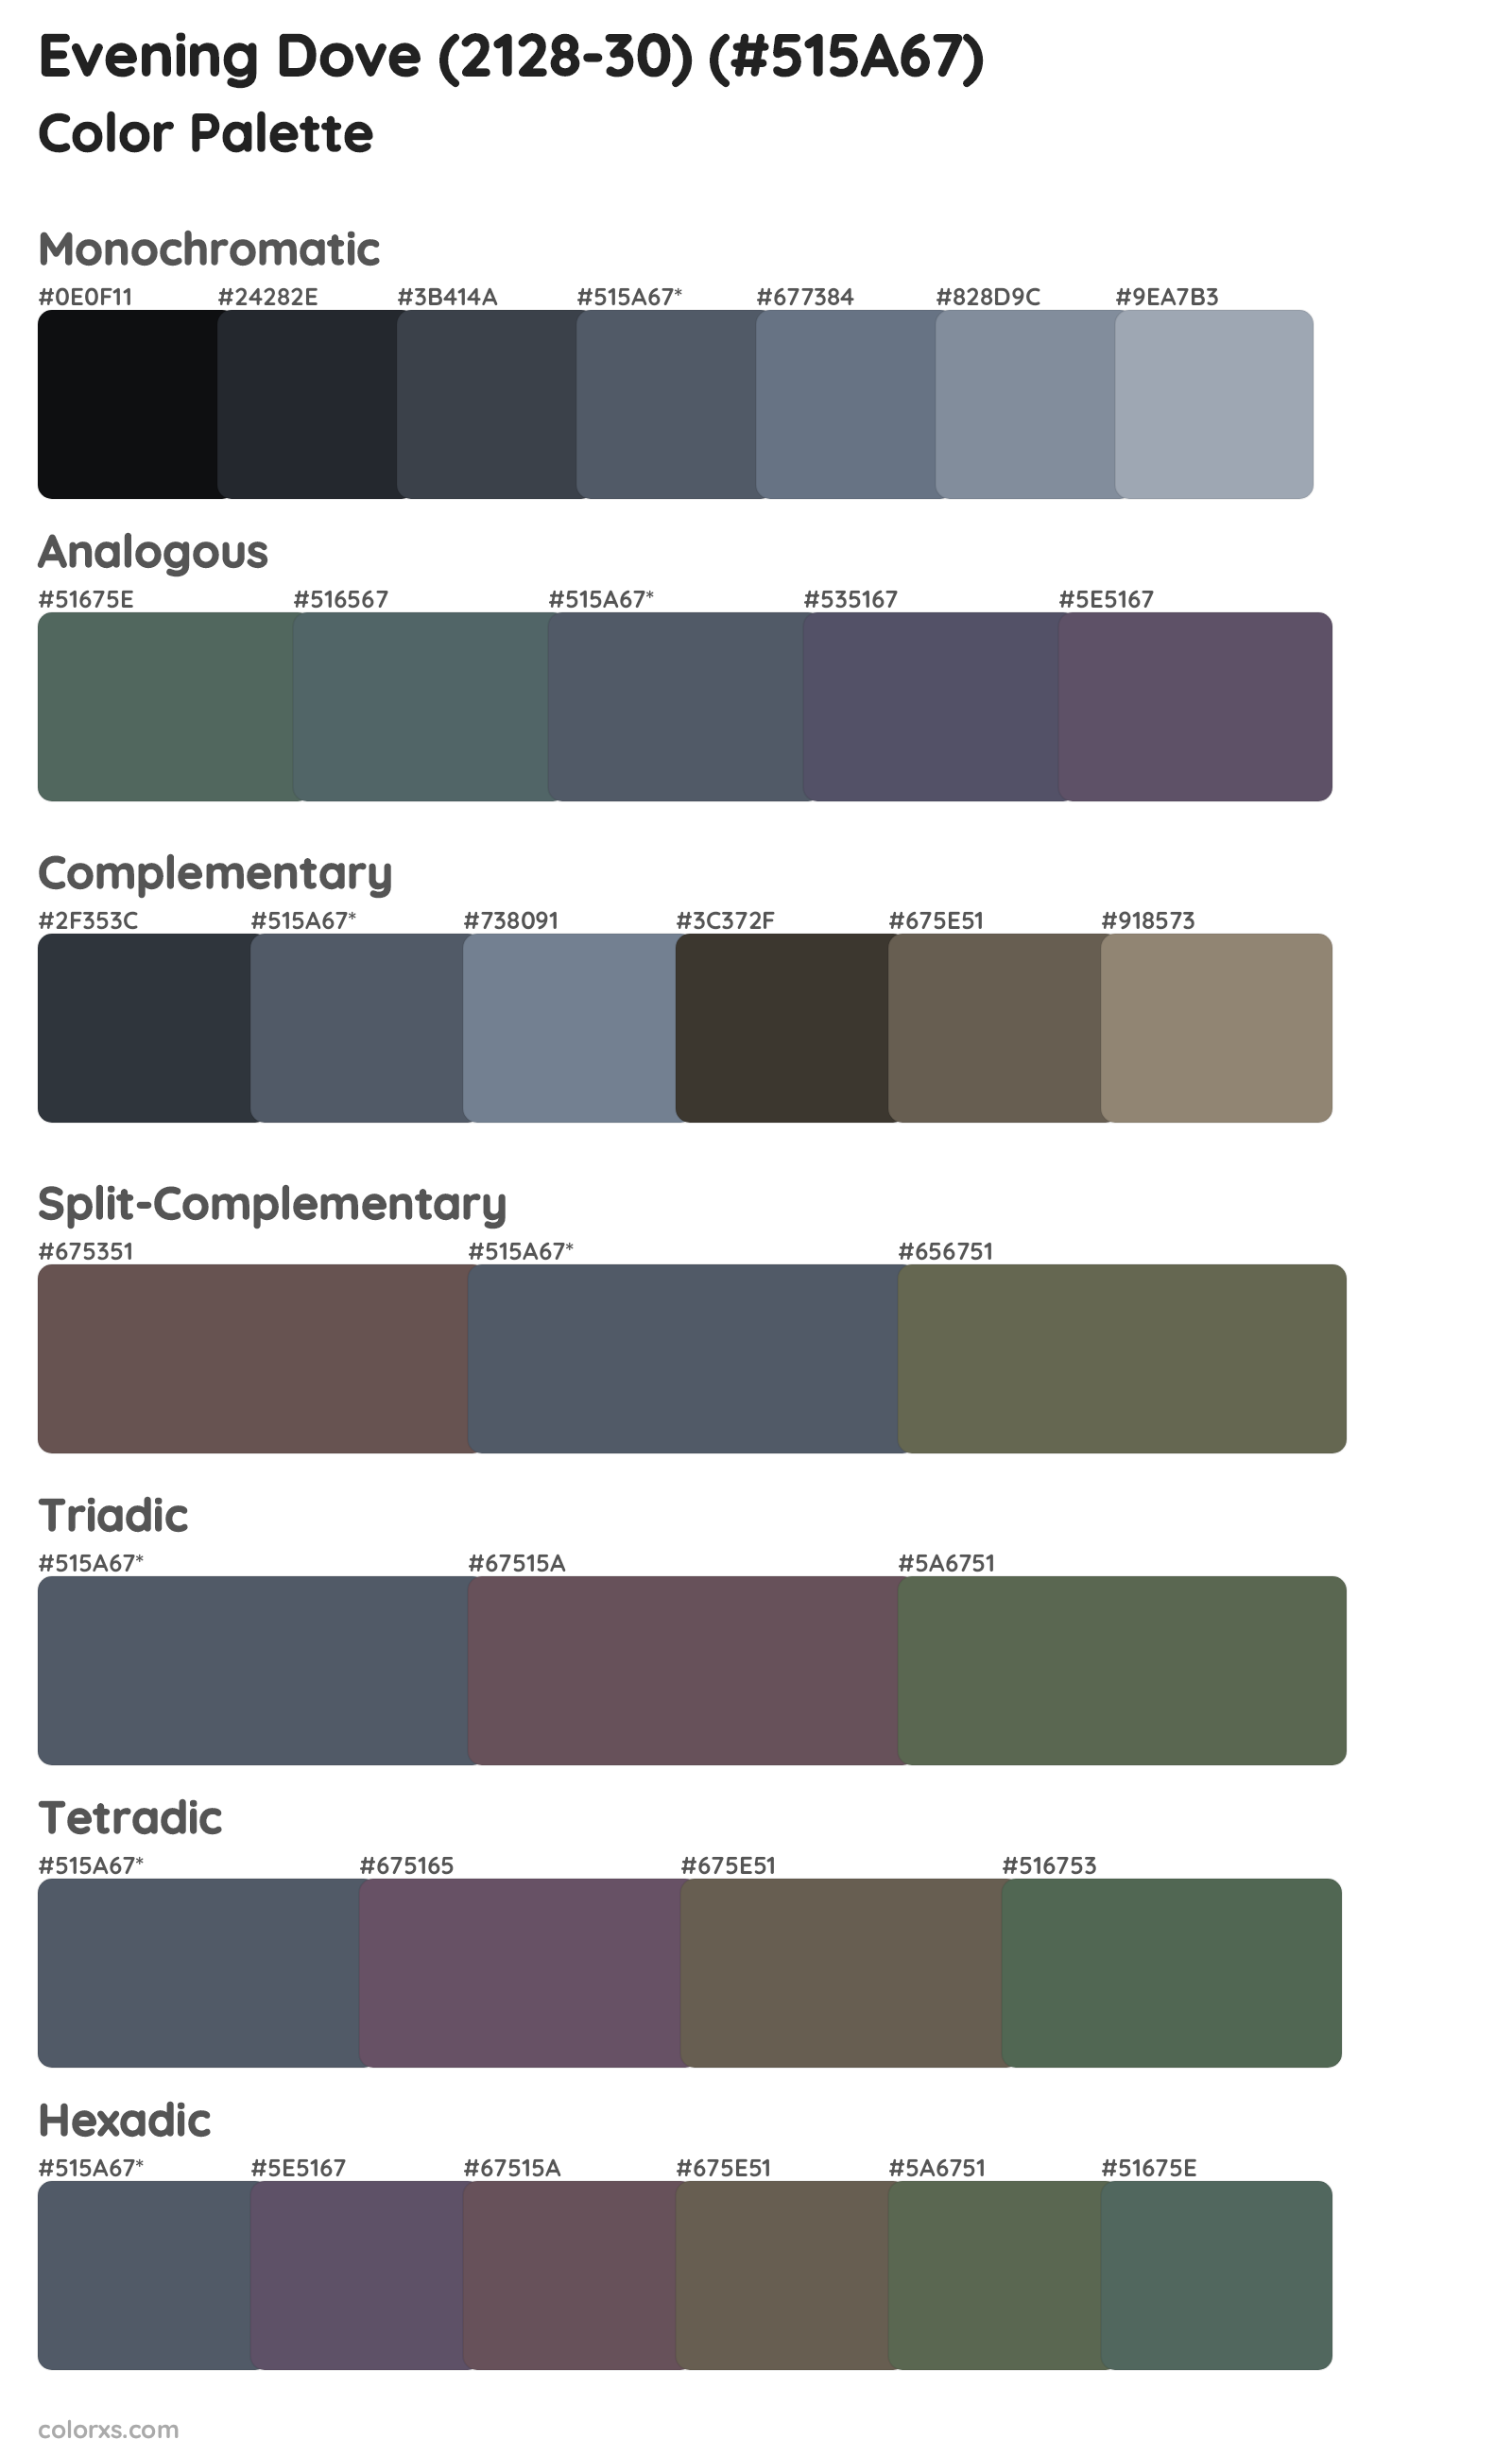 Evening Dove (2128-30) Color Scheme Palettes